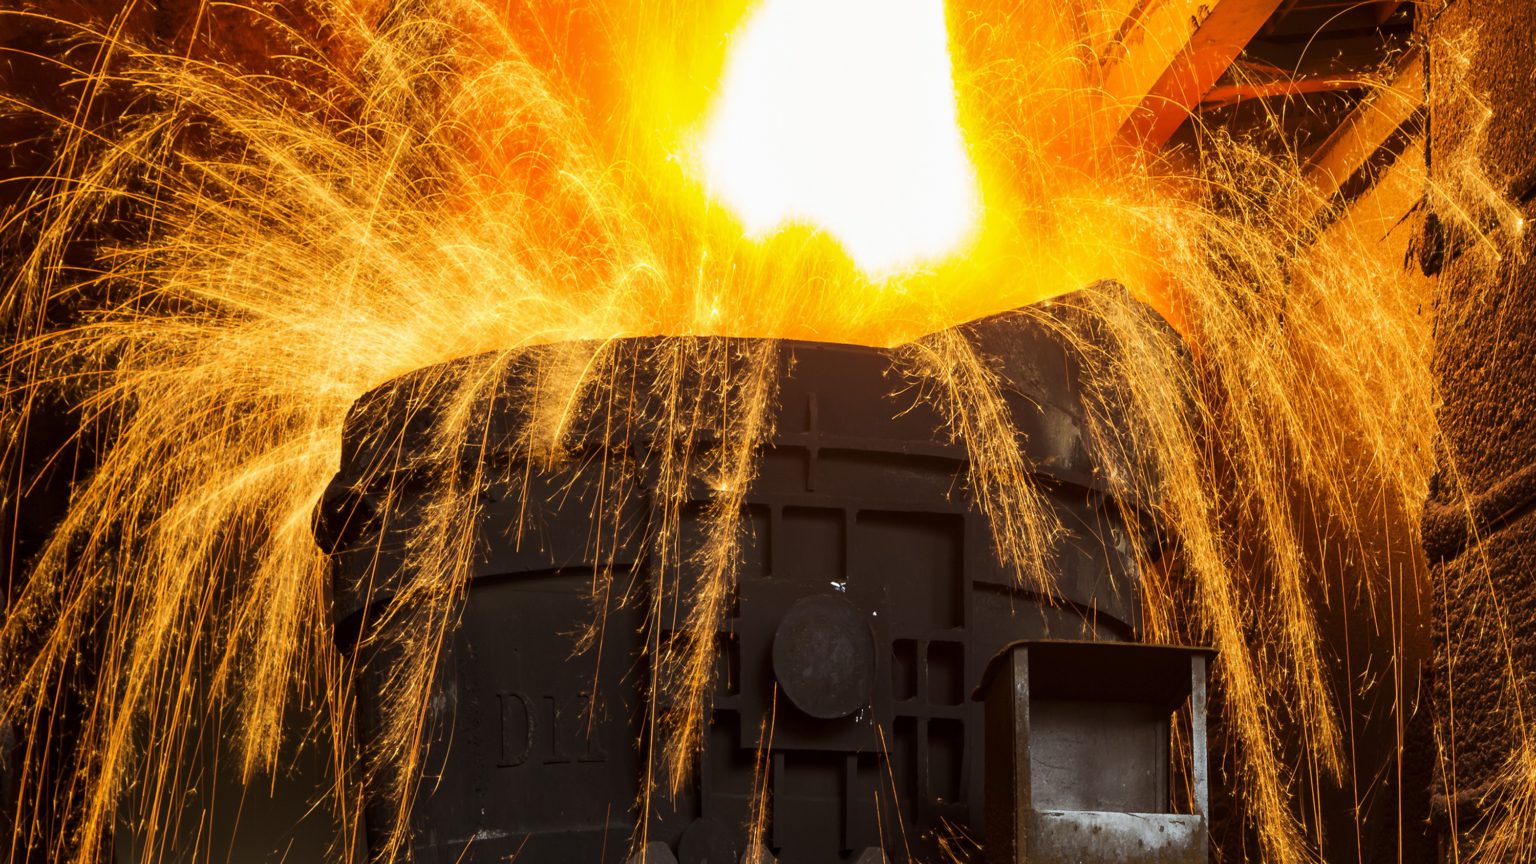 Iron ore price weakens amid waning China stimulus hopes, high portside stocks